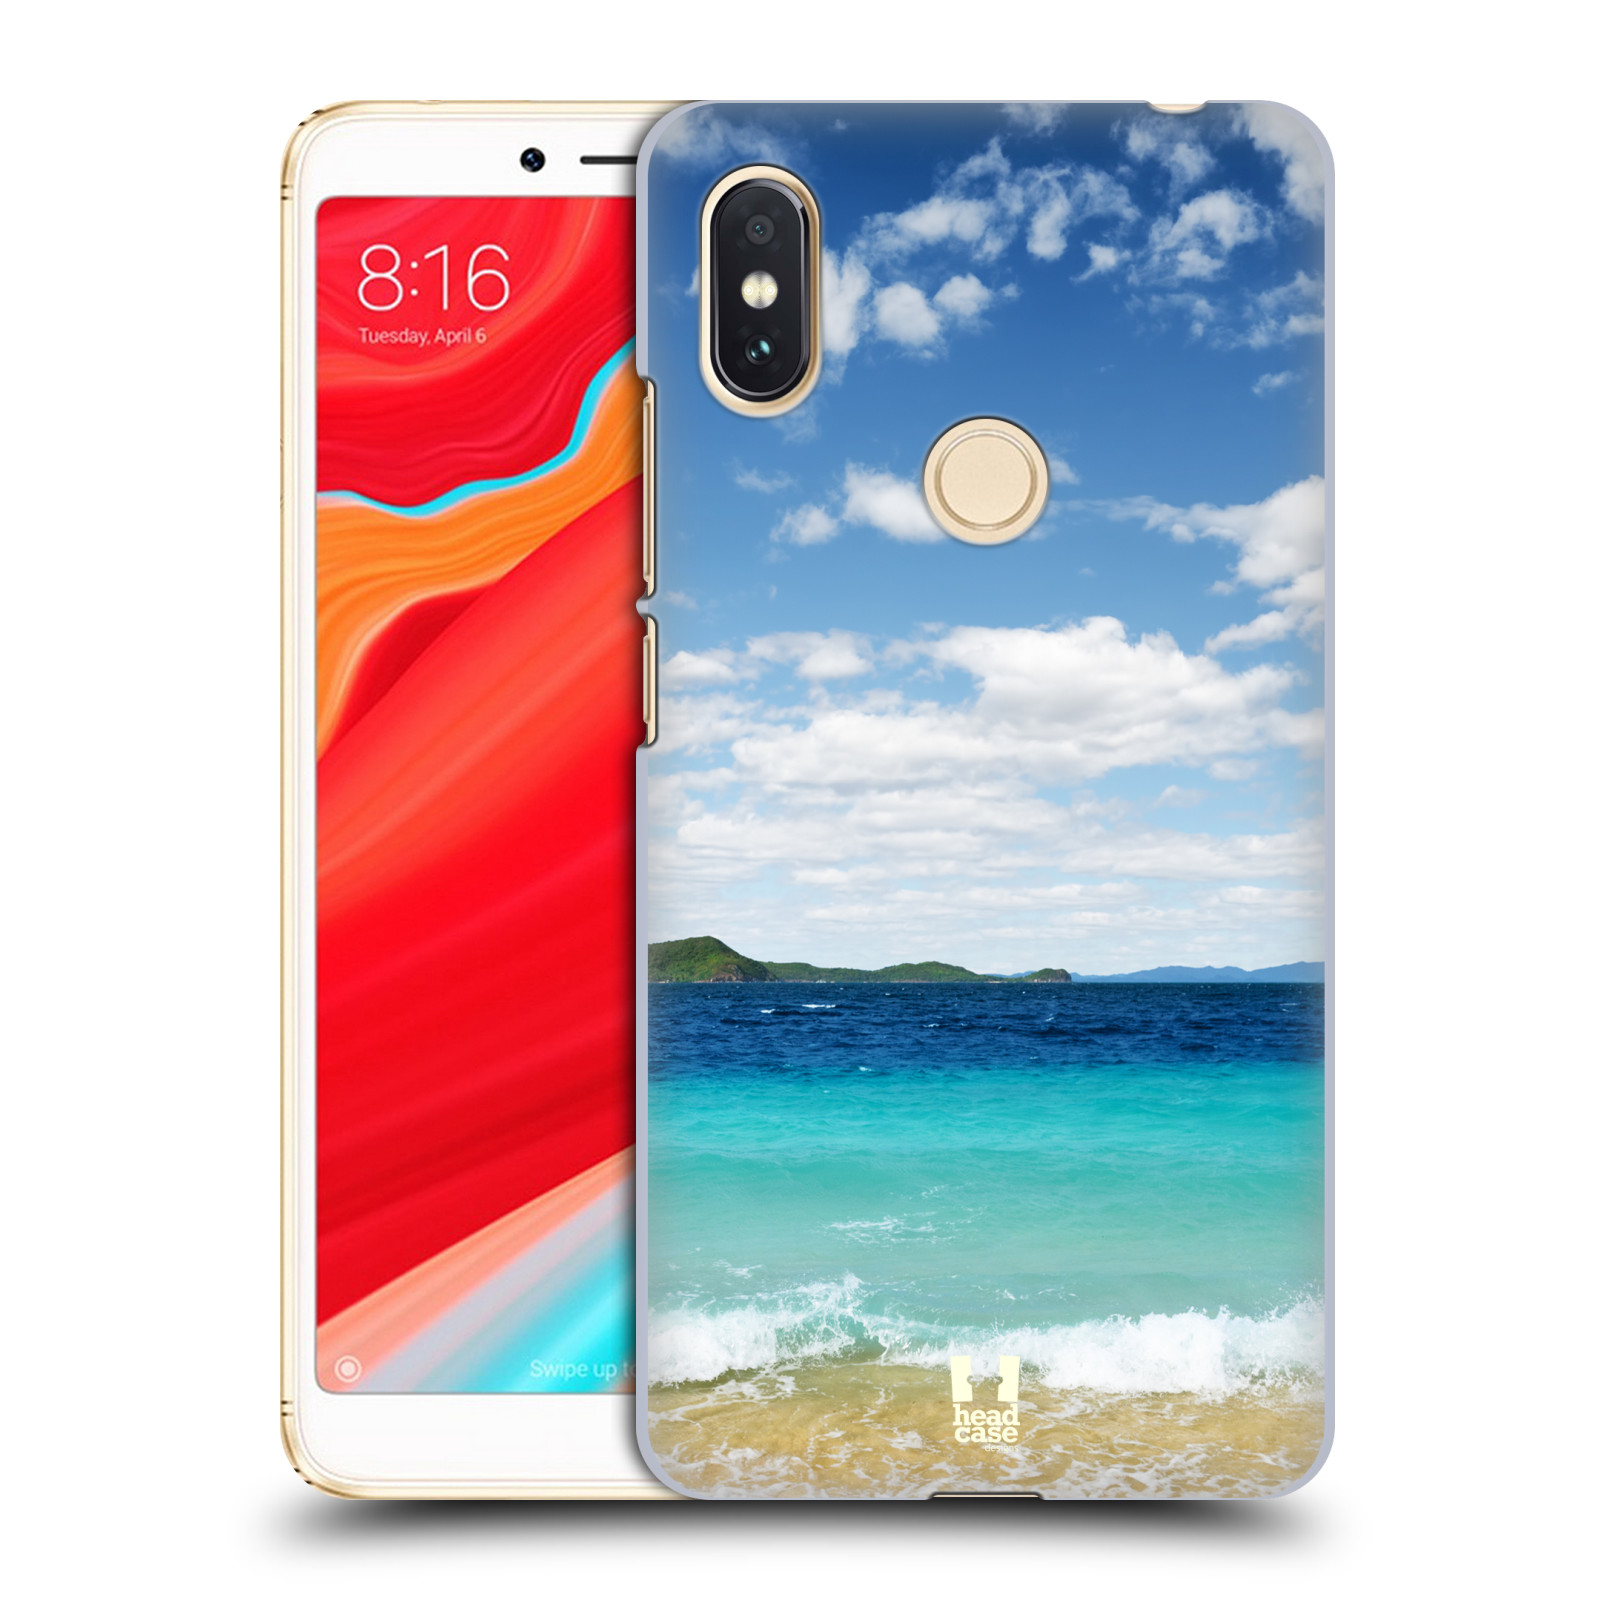 HEAD CASE plastový obal na mobil Xiaomi Redmi S2 vzor Pláže a Moře VZDÁLENÝ OSTROV